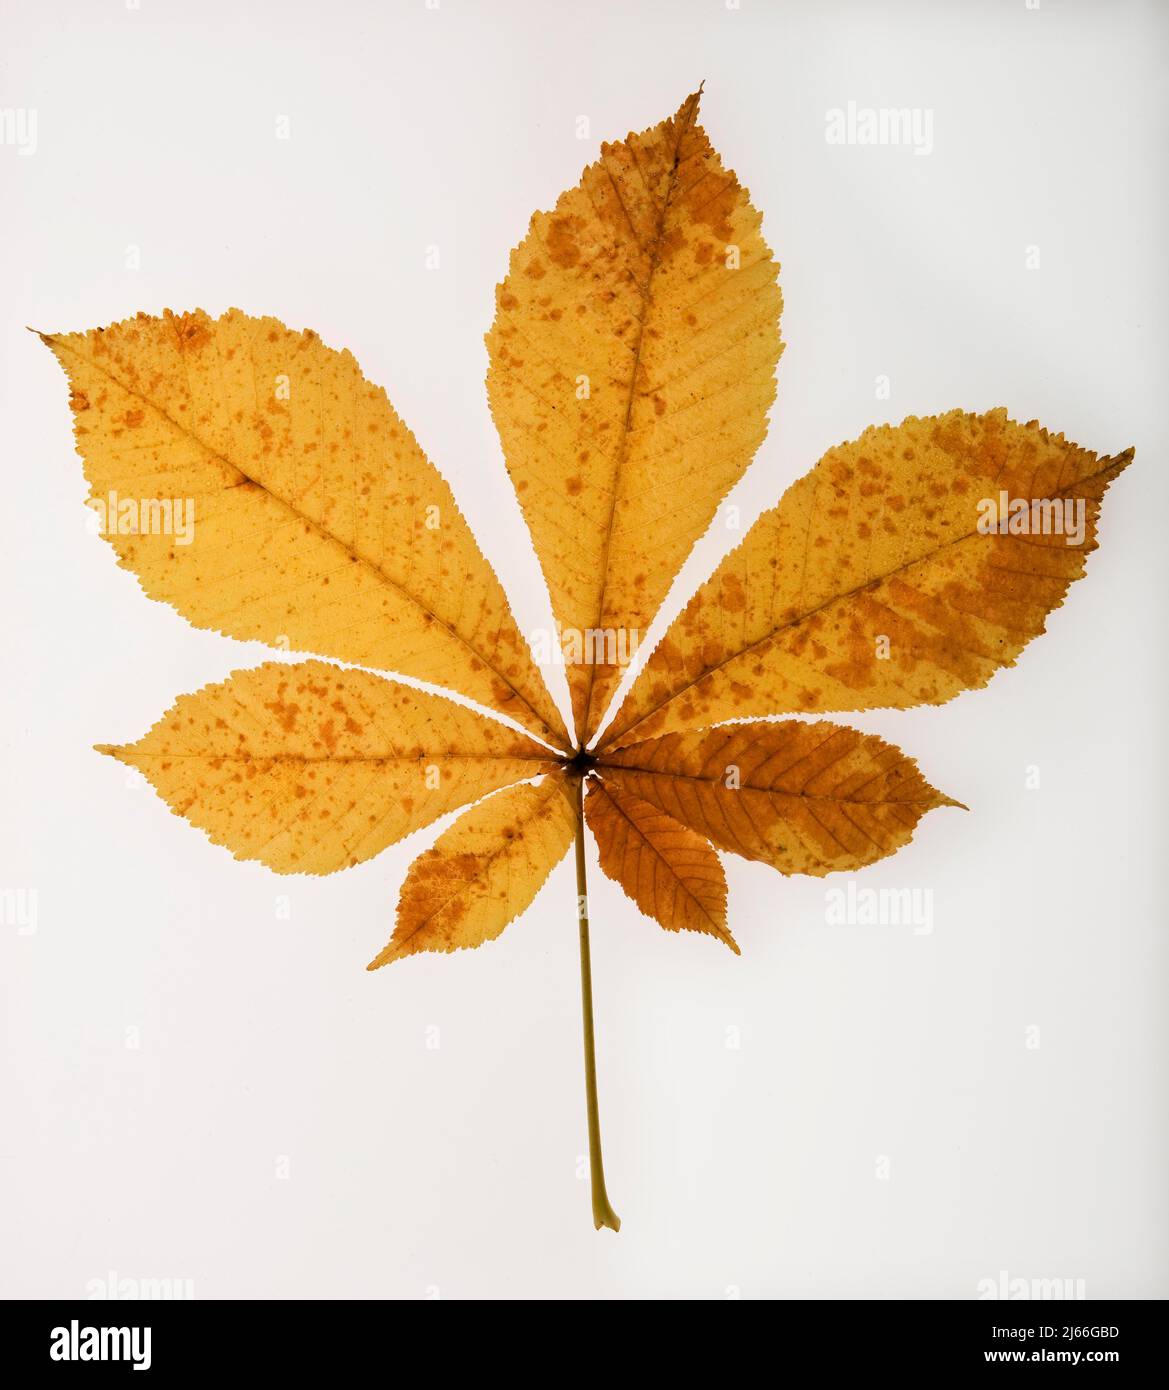 Herbstlich verfaerbtes Kastanienblatt, Kastanie (Castanea), Studioaufnahme Stock Photo